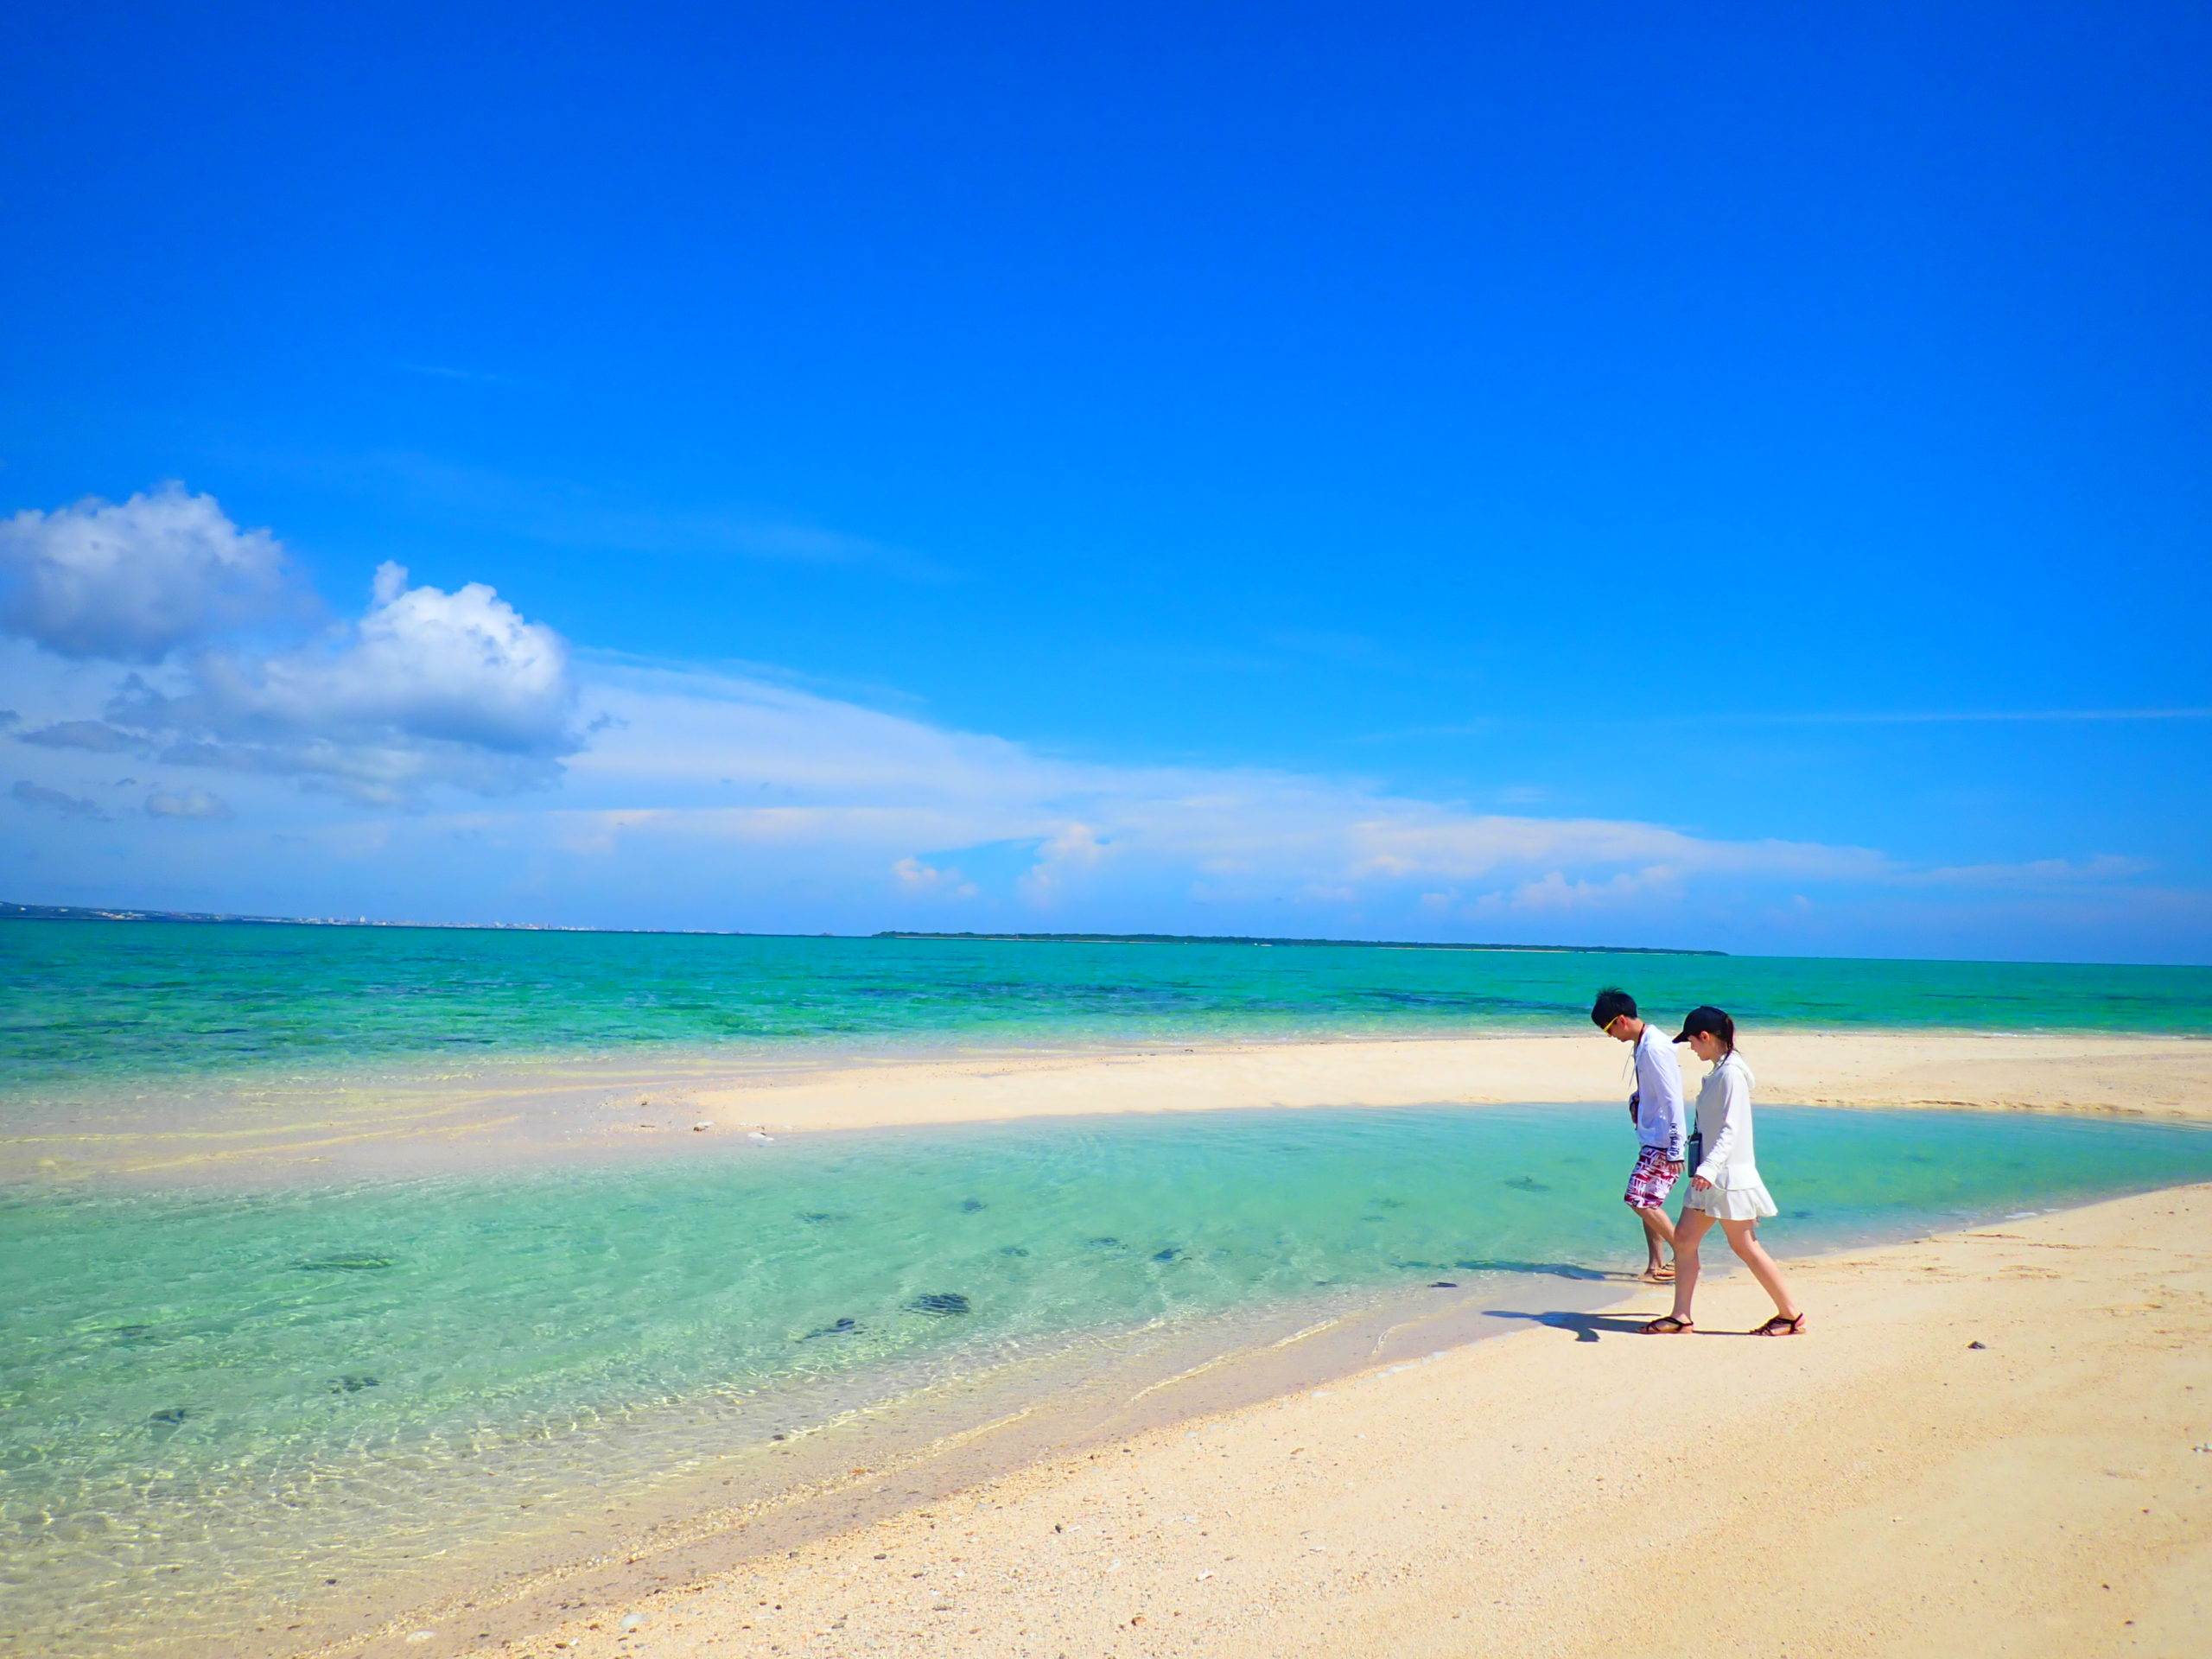 石垣島、幻の島上陸&シュノーケリング、カップルで白い砂浜の上を歩く